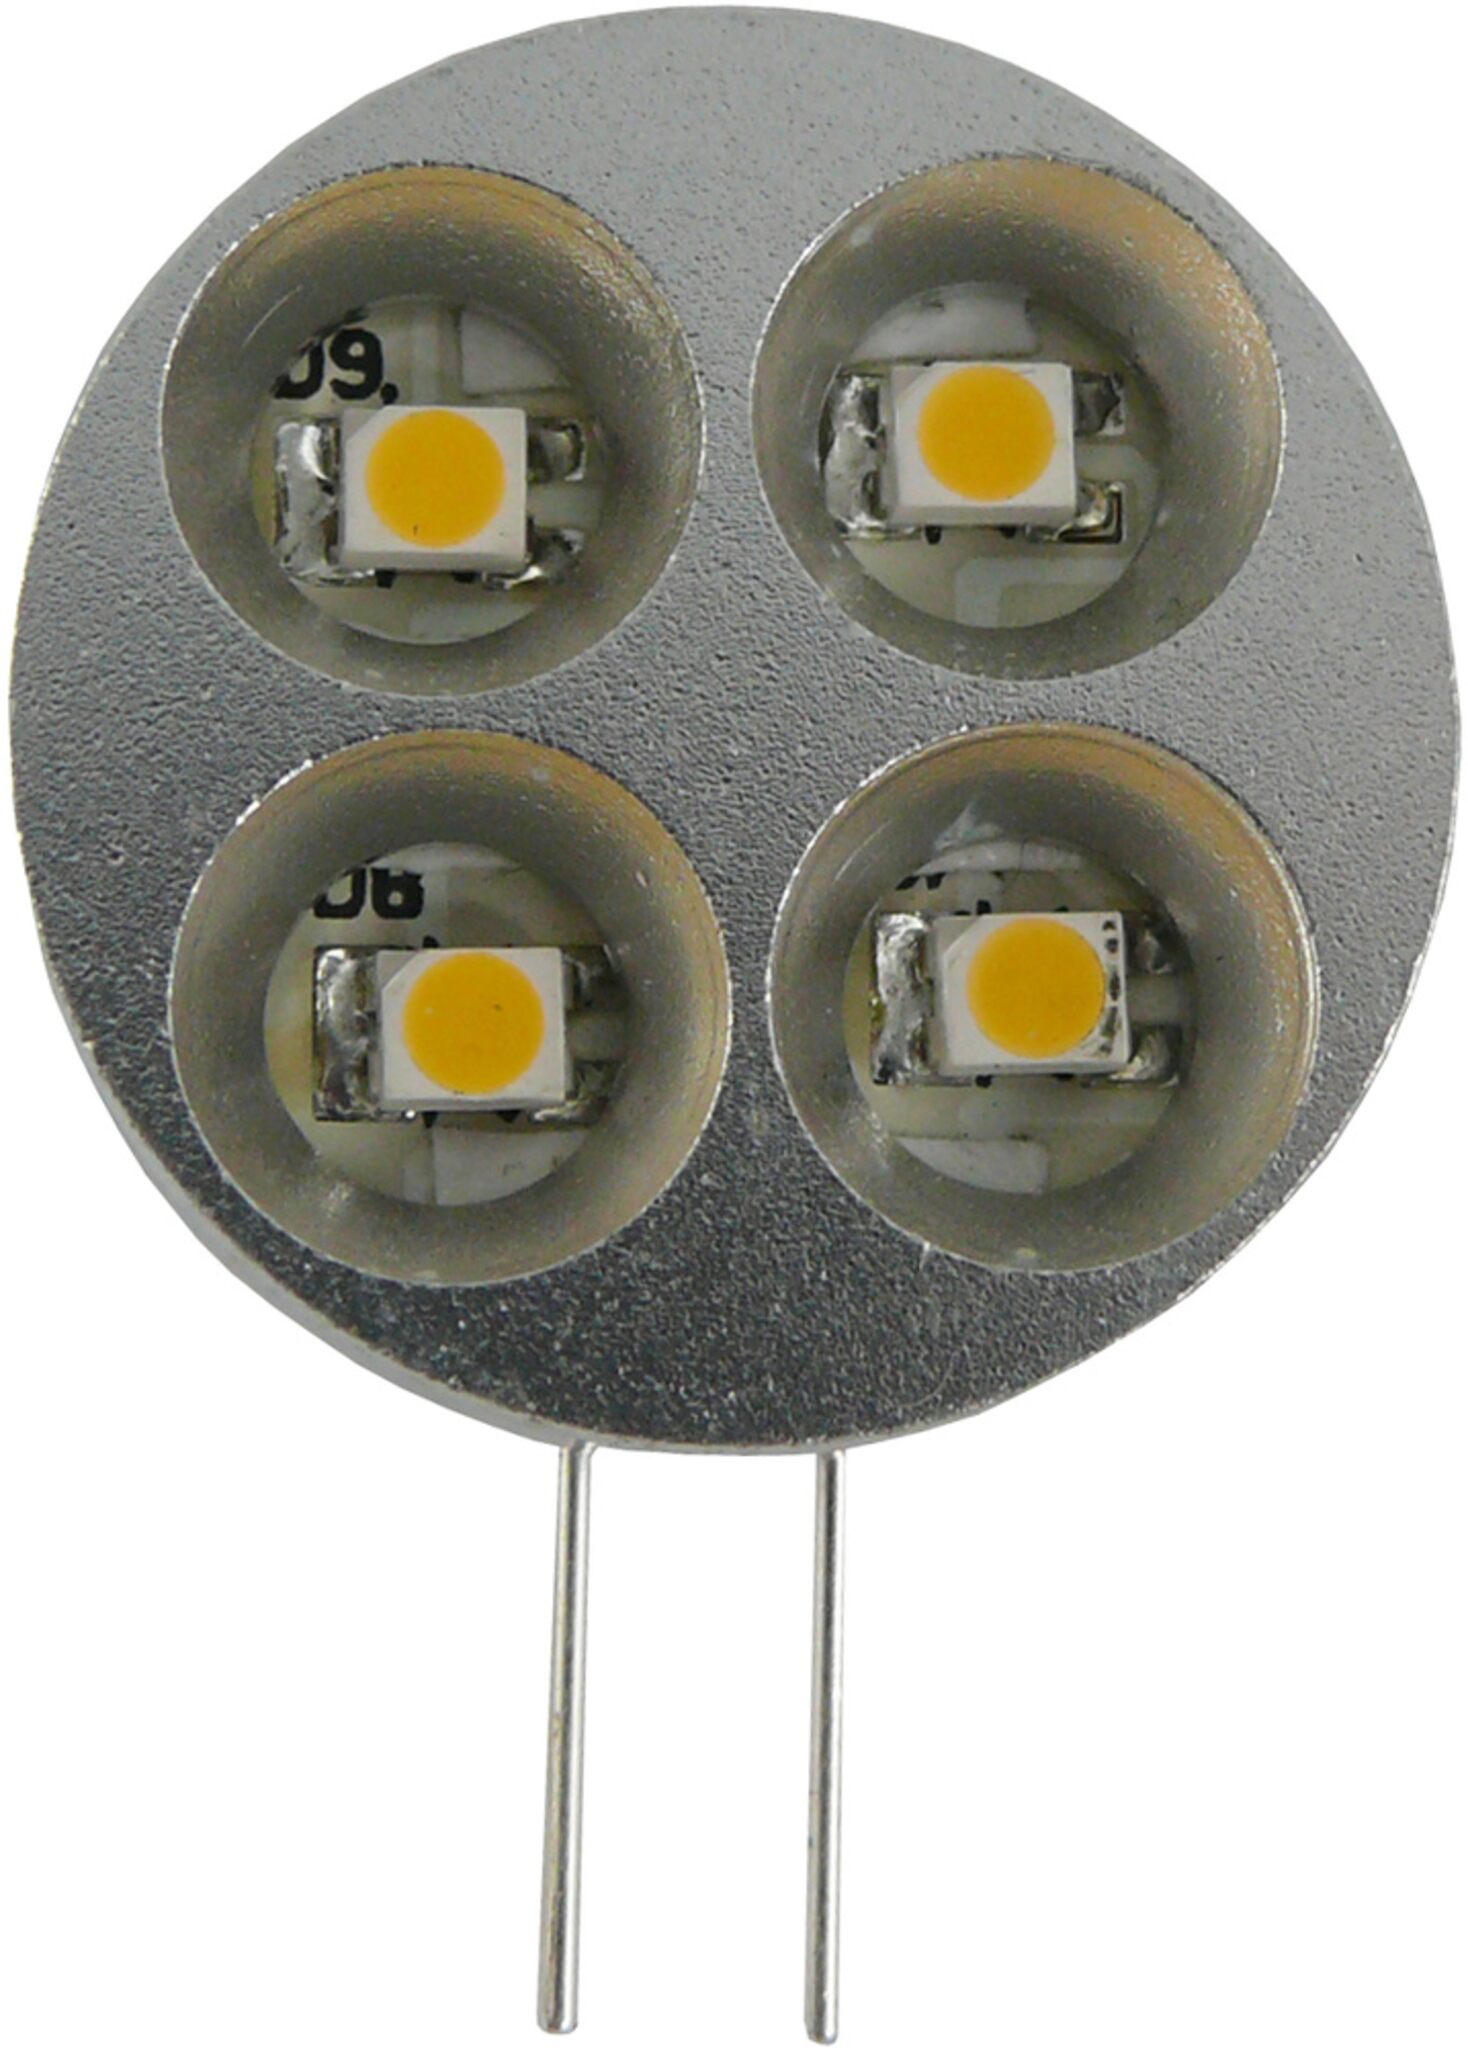 21-LED Spot, 120 degrees, MR16/GU5